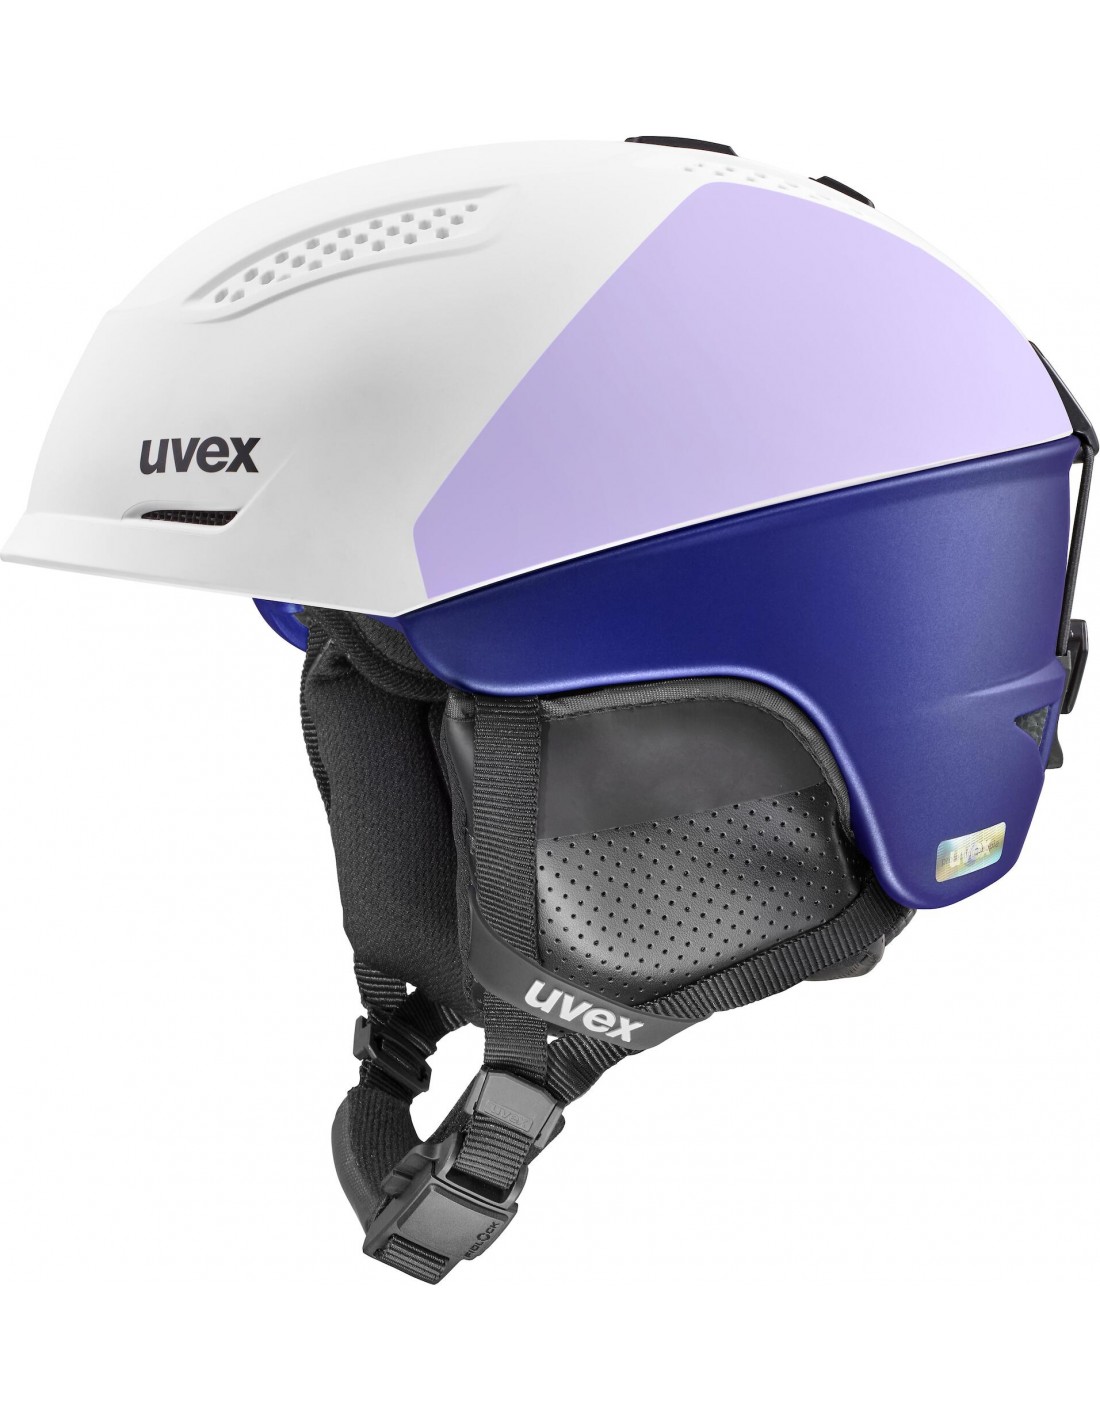 Uvex Skihelm Ultra Pro WE, white - cool lavender Skihelmfarbe - Weiß / Blau, Skihelmgröße - 51 - 55 cm, Skihelmbauweise - Freeride, von Uvex